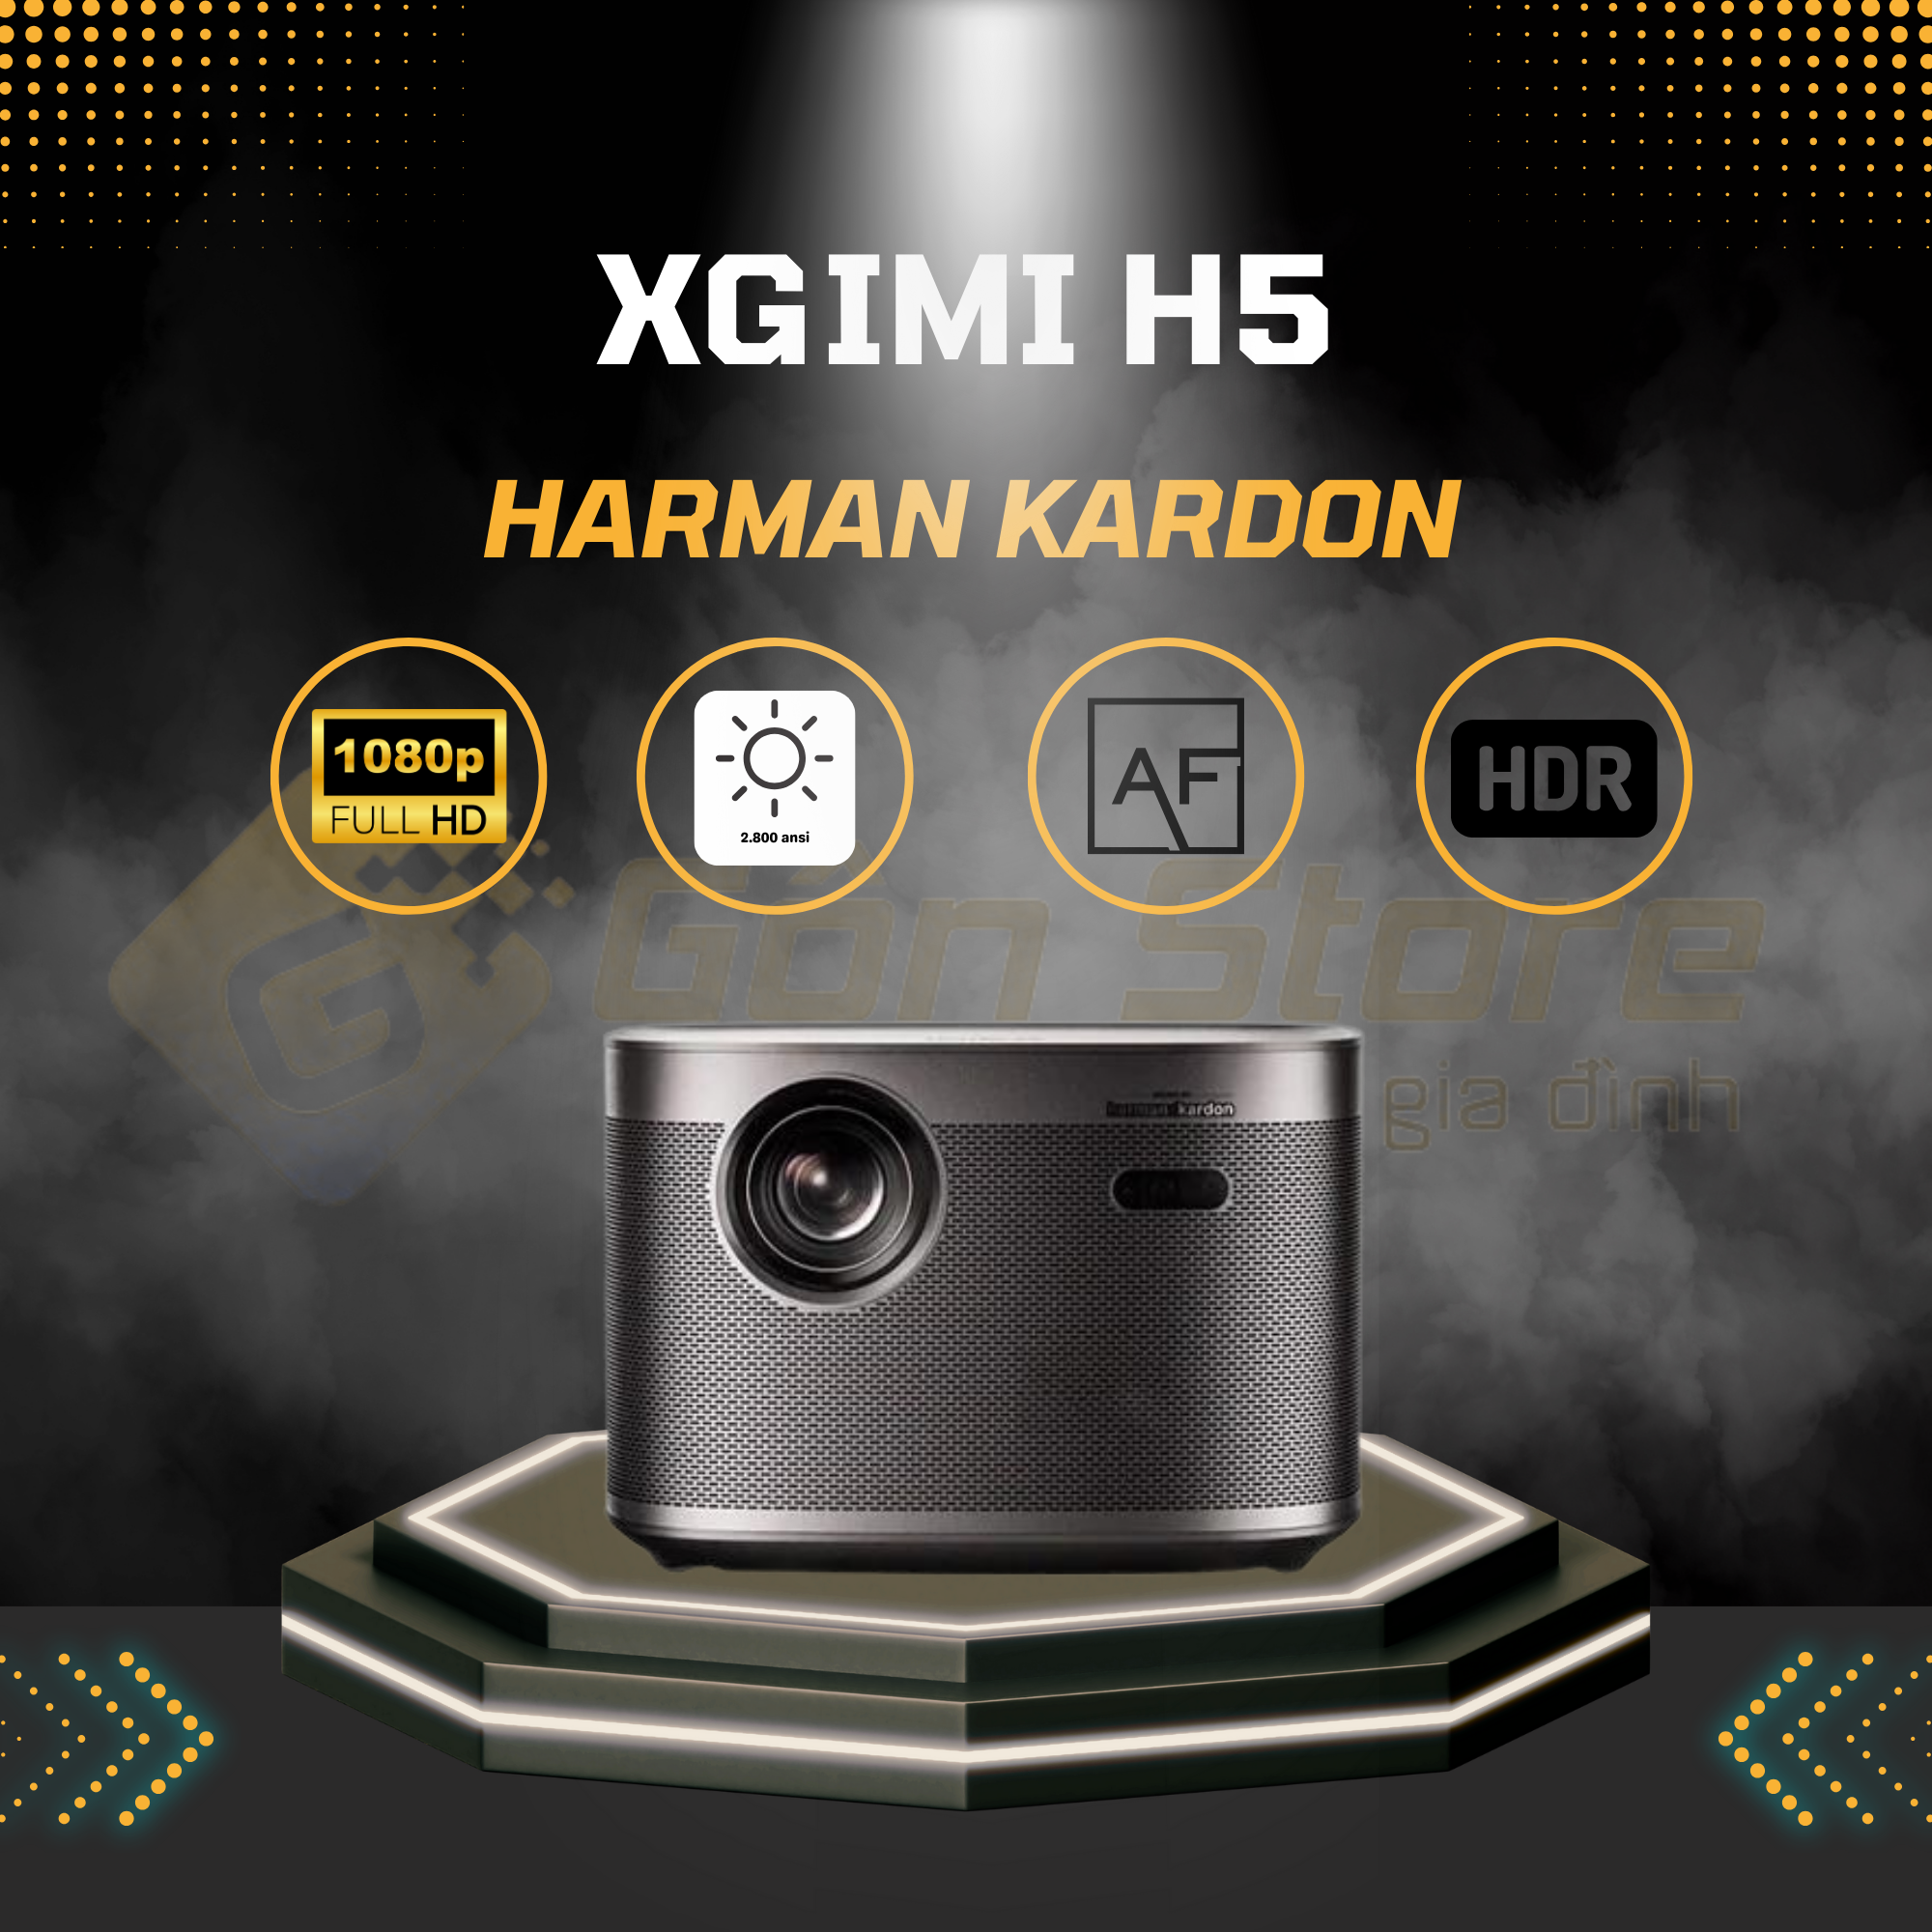 Máy chiếu thông minh Xgimi H5 giá tốt tại Gôn Store Chuyên cung cấp máy chiếu phim gia đình giá rẻ tại HCM